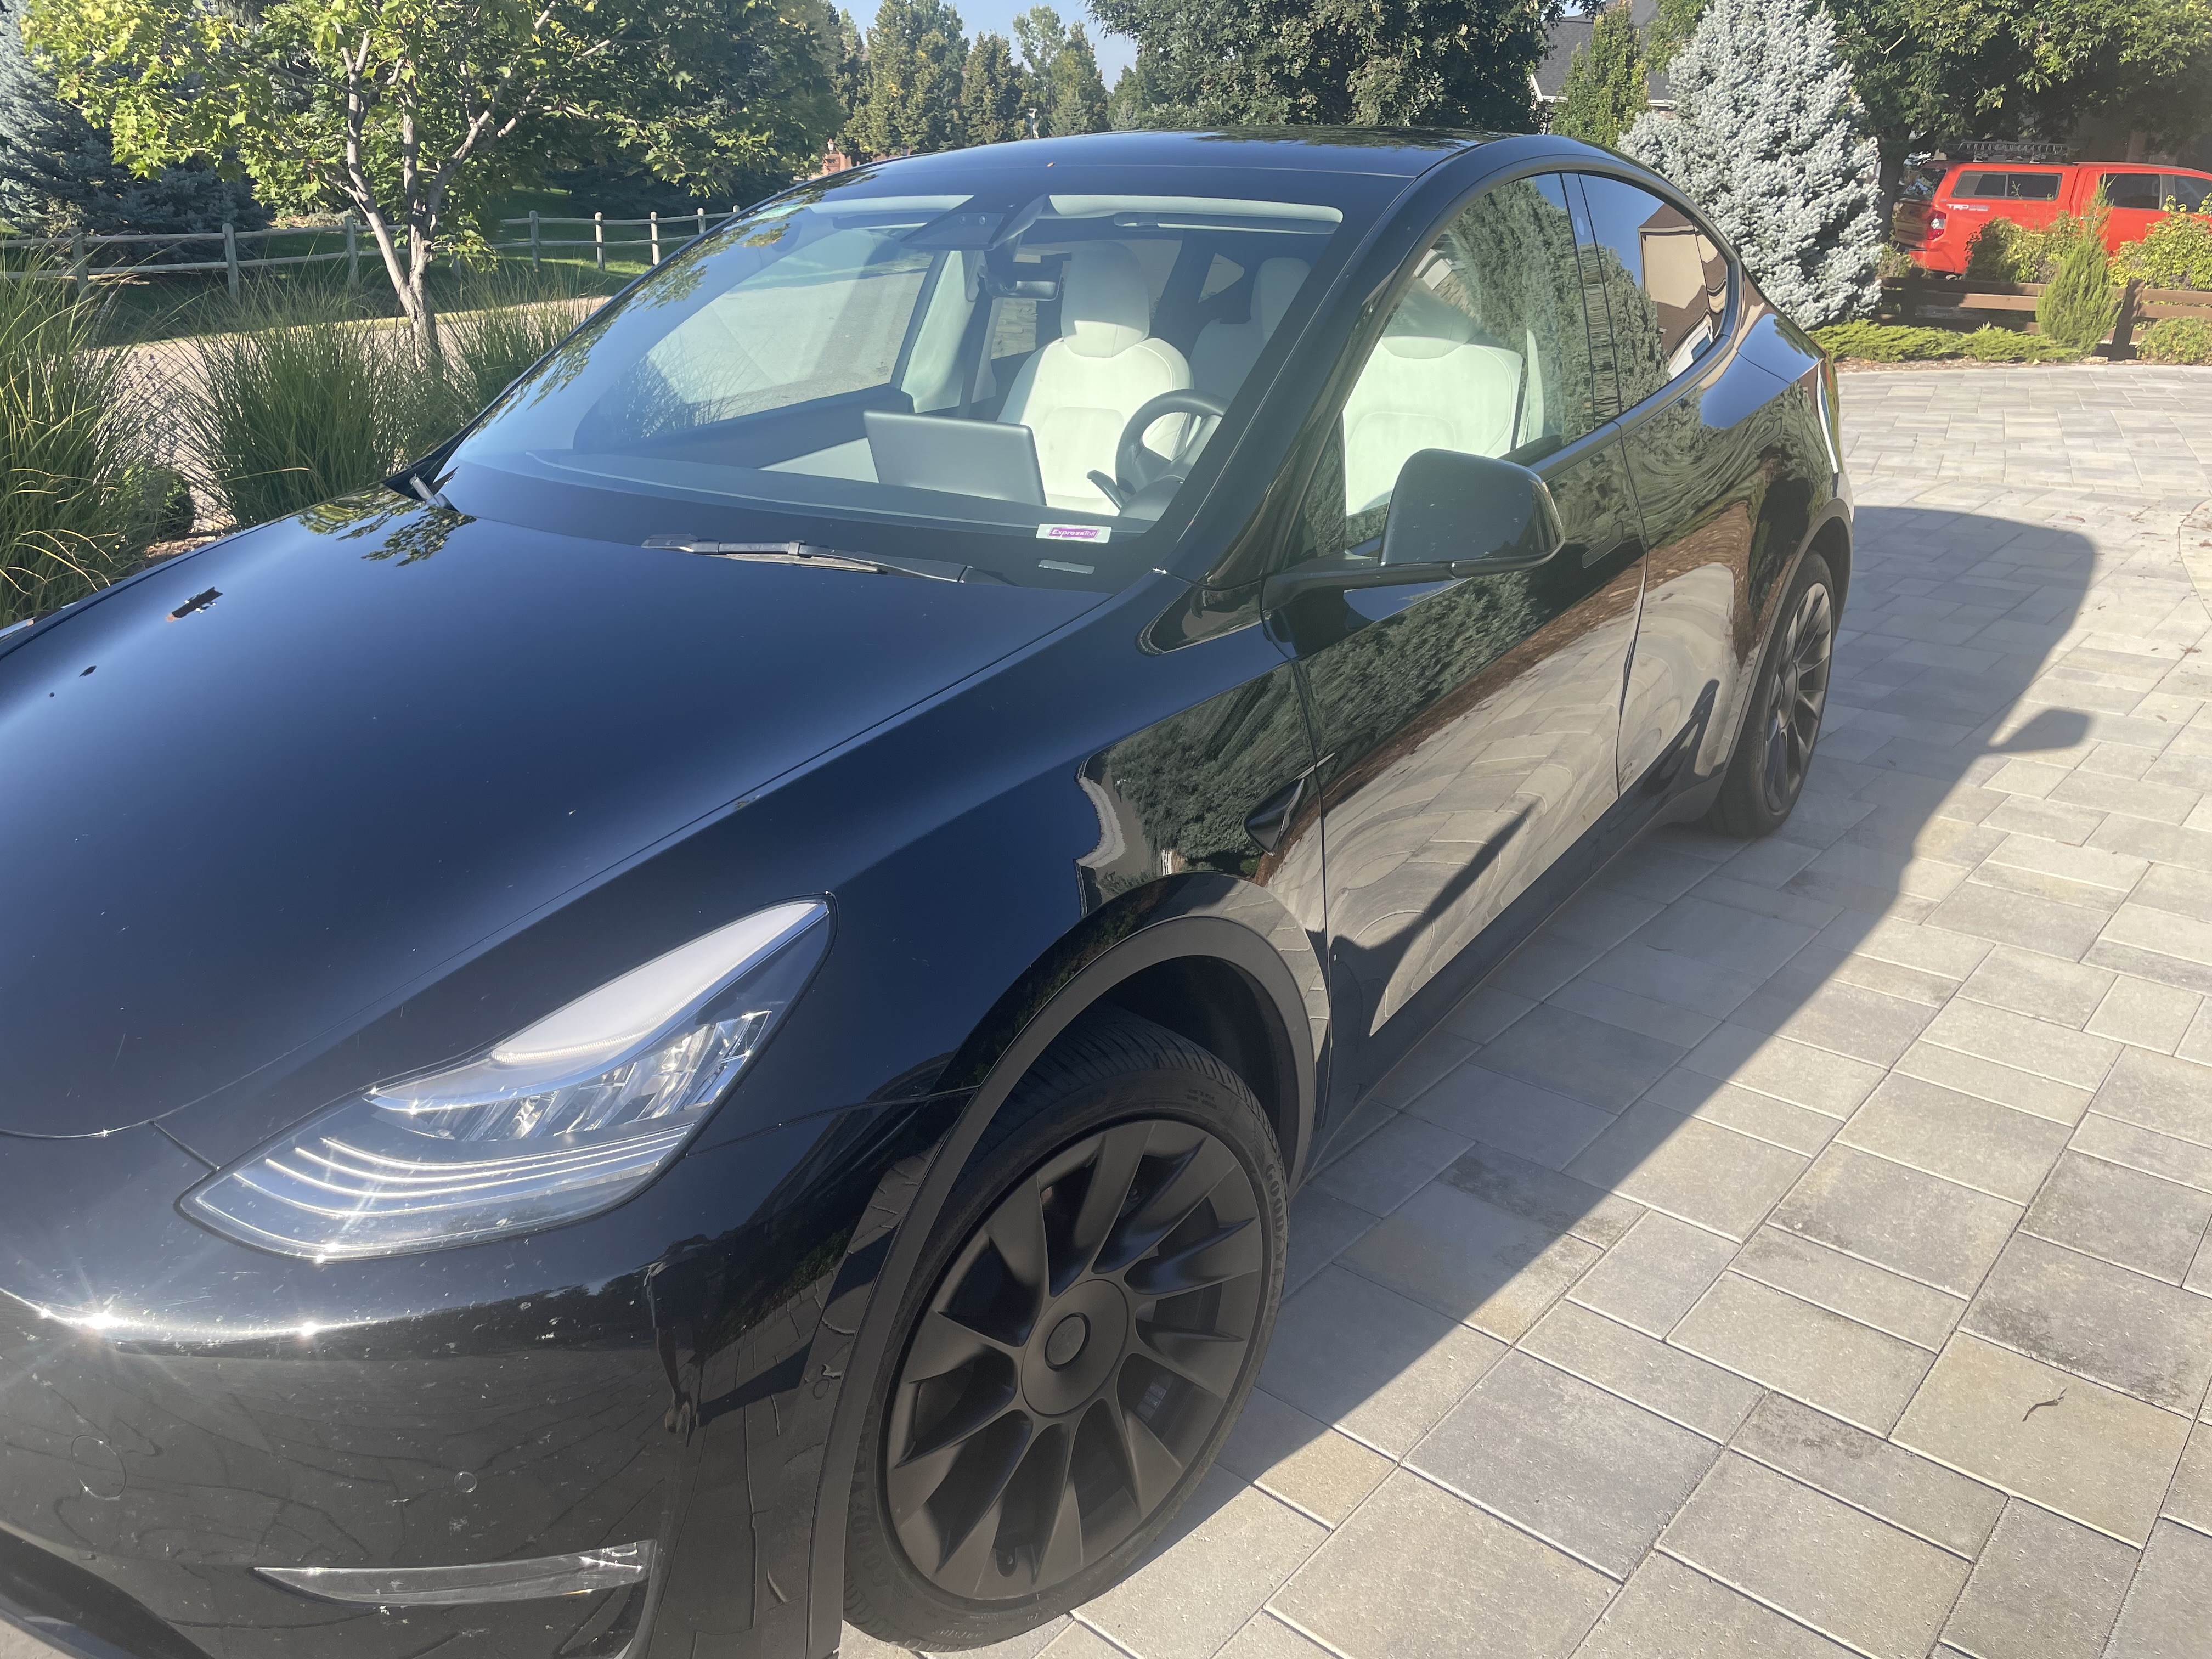 2021 Tesla Model Y Review - Autotrader